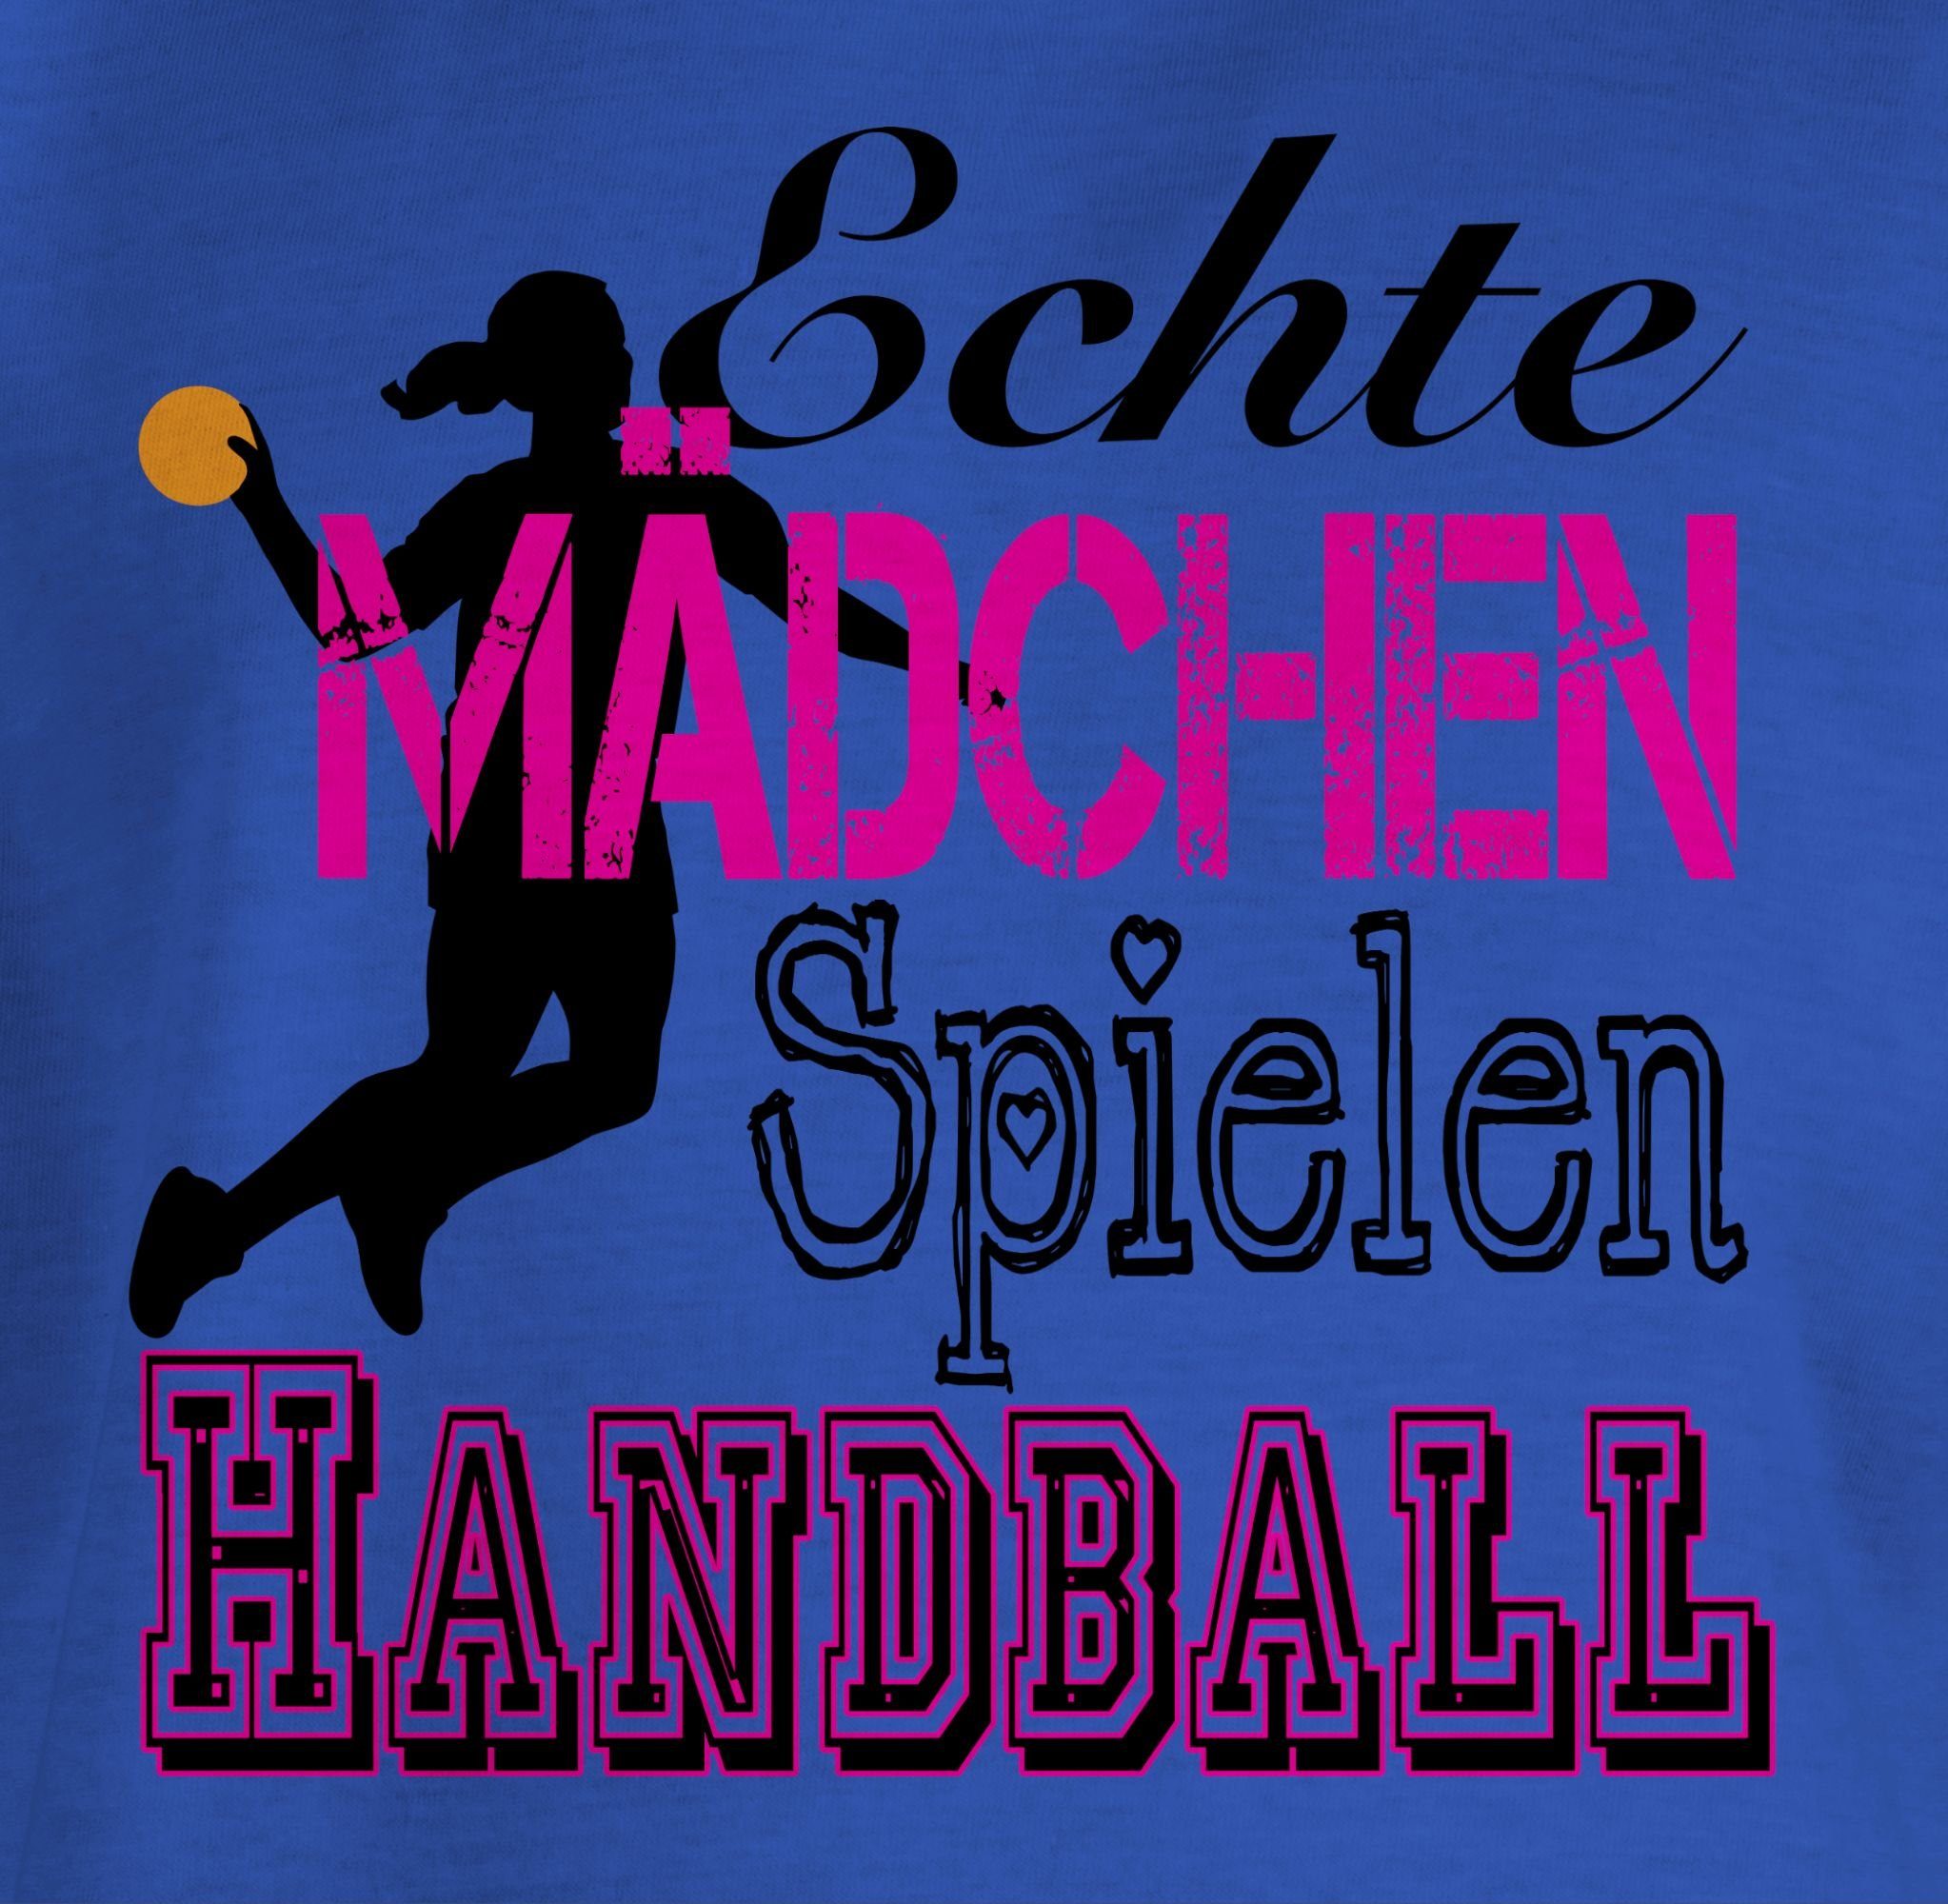 Shirtracer T-Shirt Echte Mädchen Royalblau Spielen Kleidung 3 Handball Kinder Sport